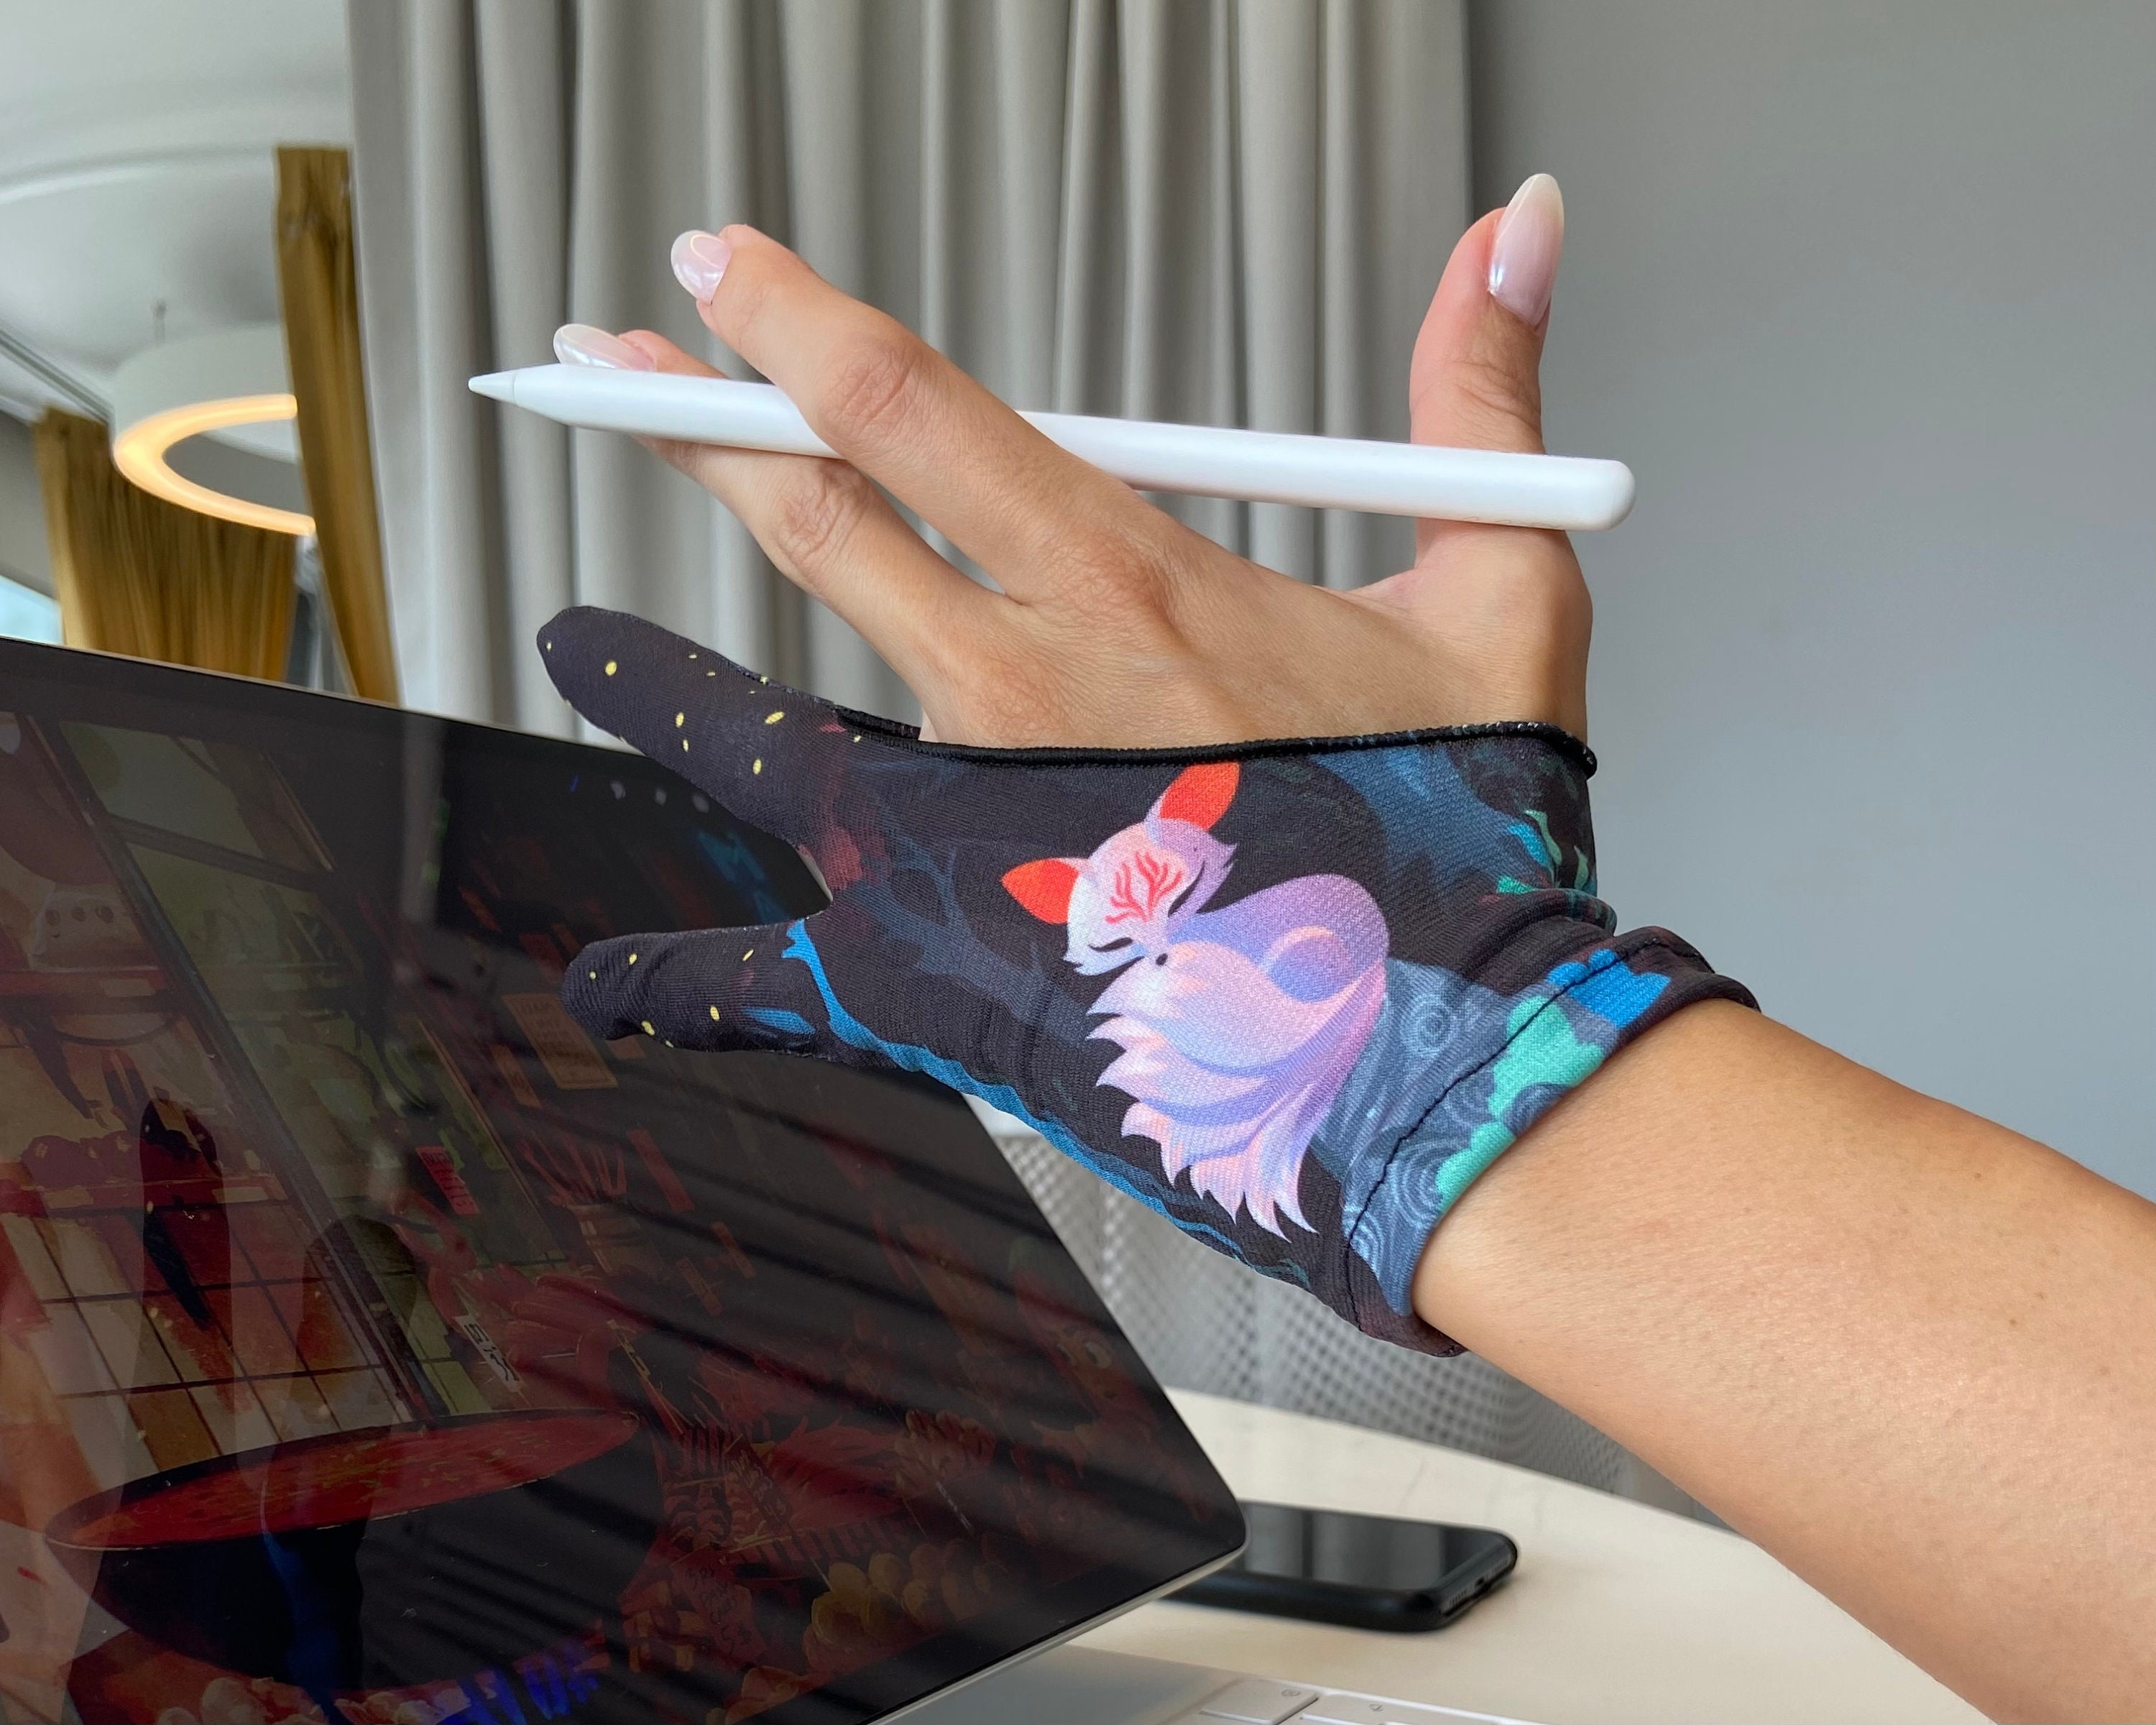 Tablet Artist Glove 